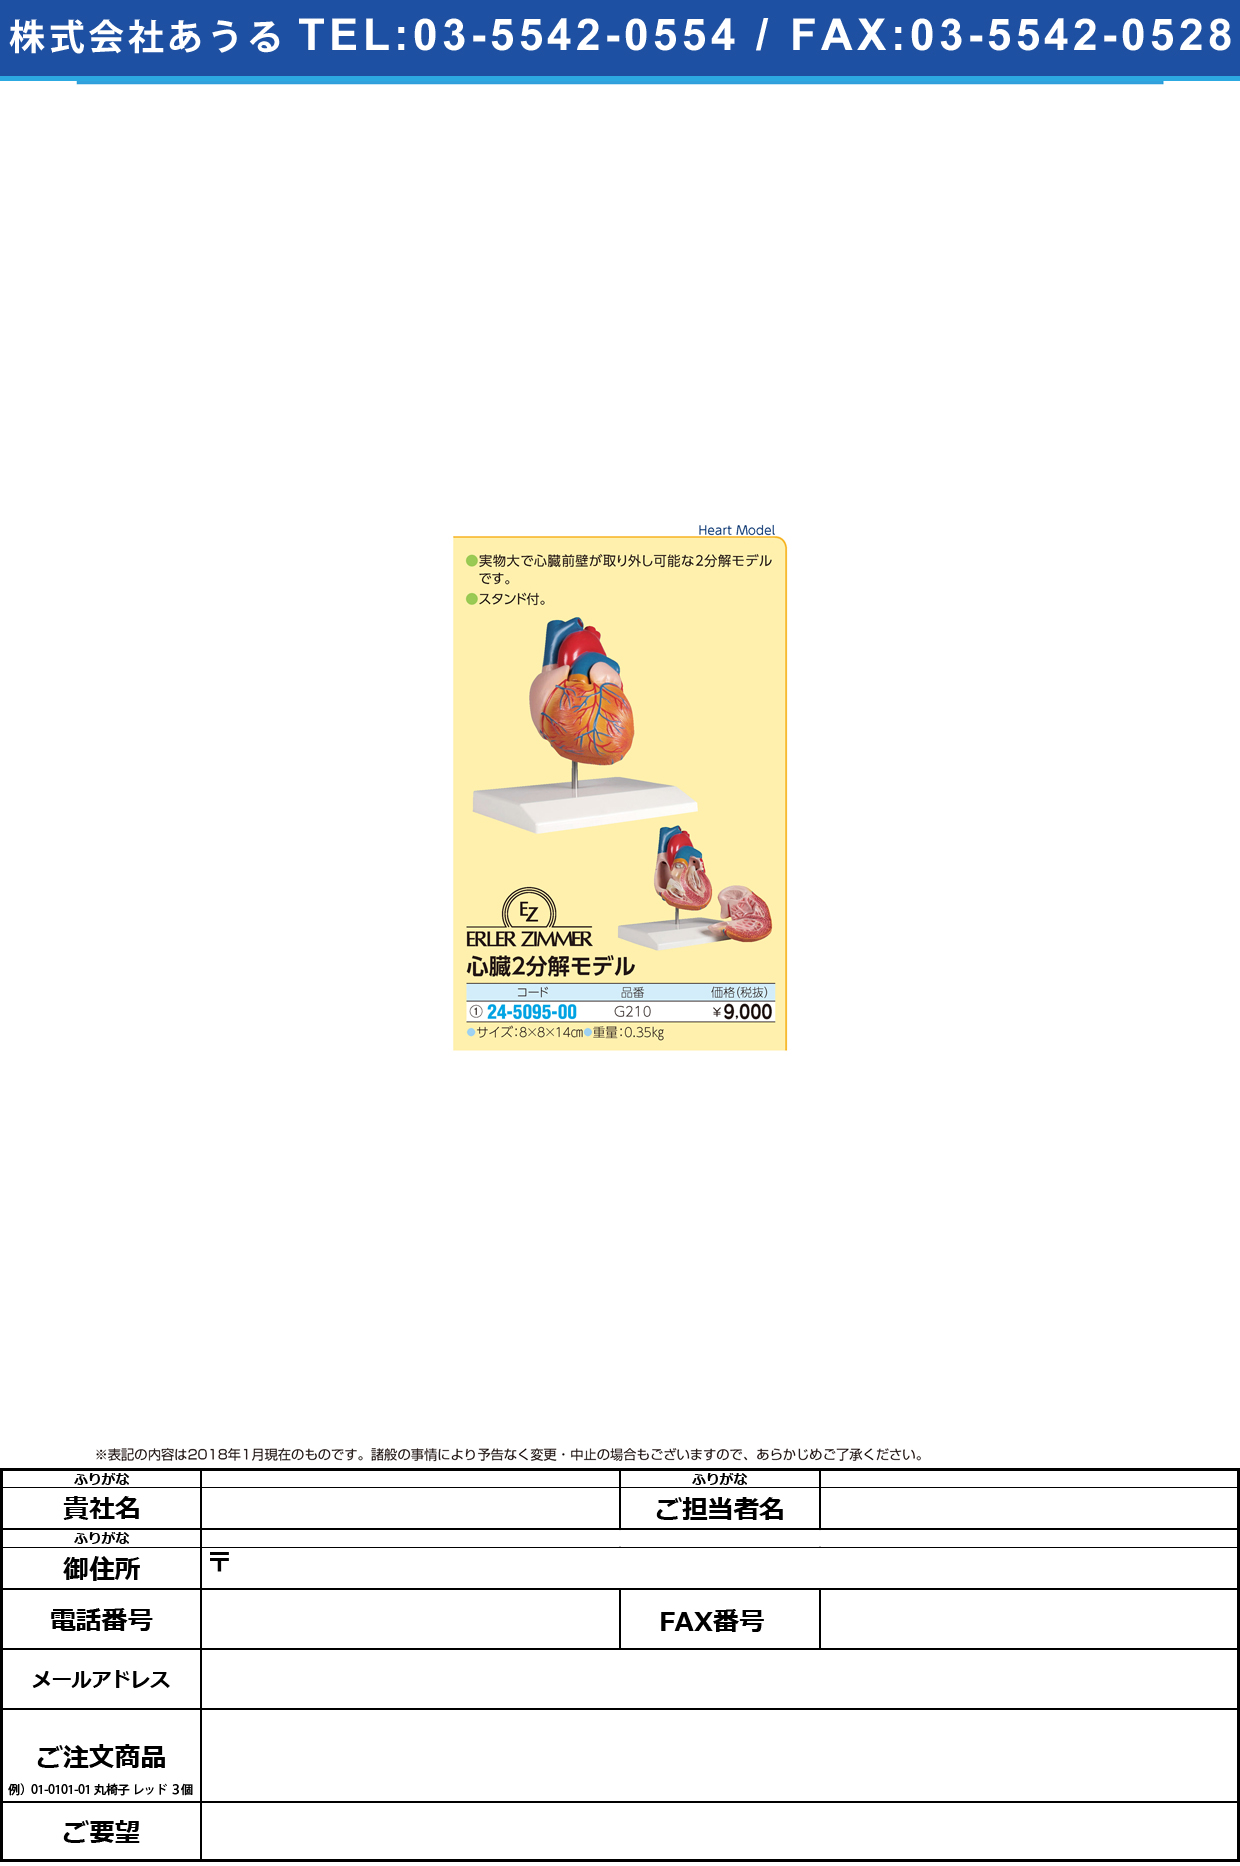 (24-5095-00)心臓２分解モデル G210 ｼﾝｿﾞｳ2ﾌﾞﾝｶｲﾓﾃﾞﾙ(エルラージーマー社)【1個単位】【2018年カタログ商品】